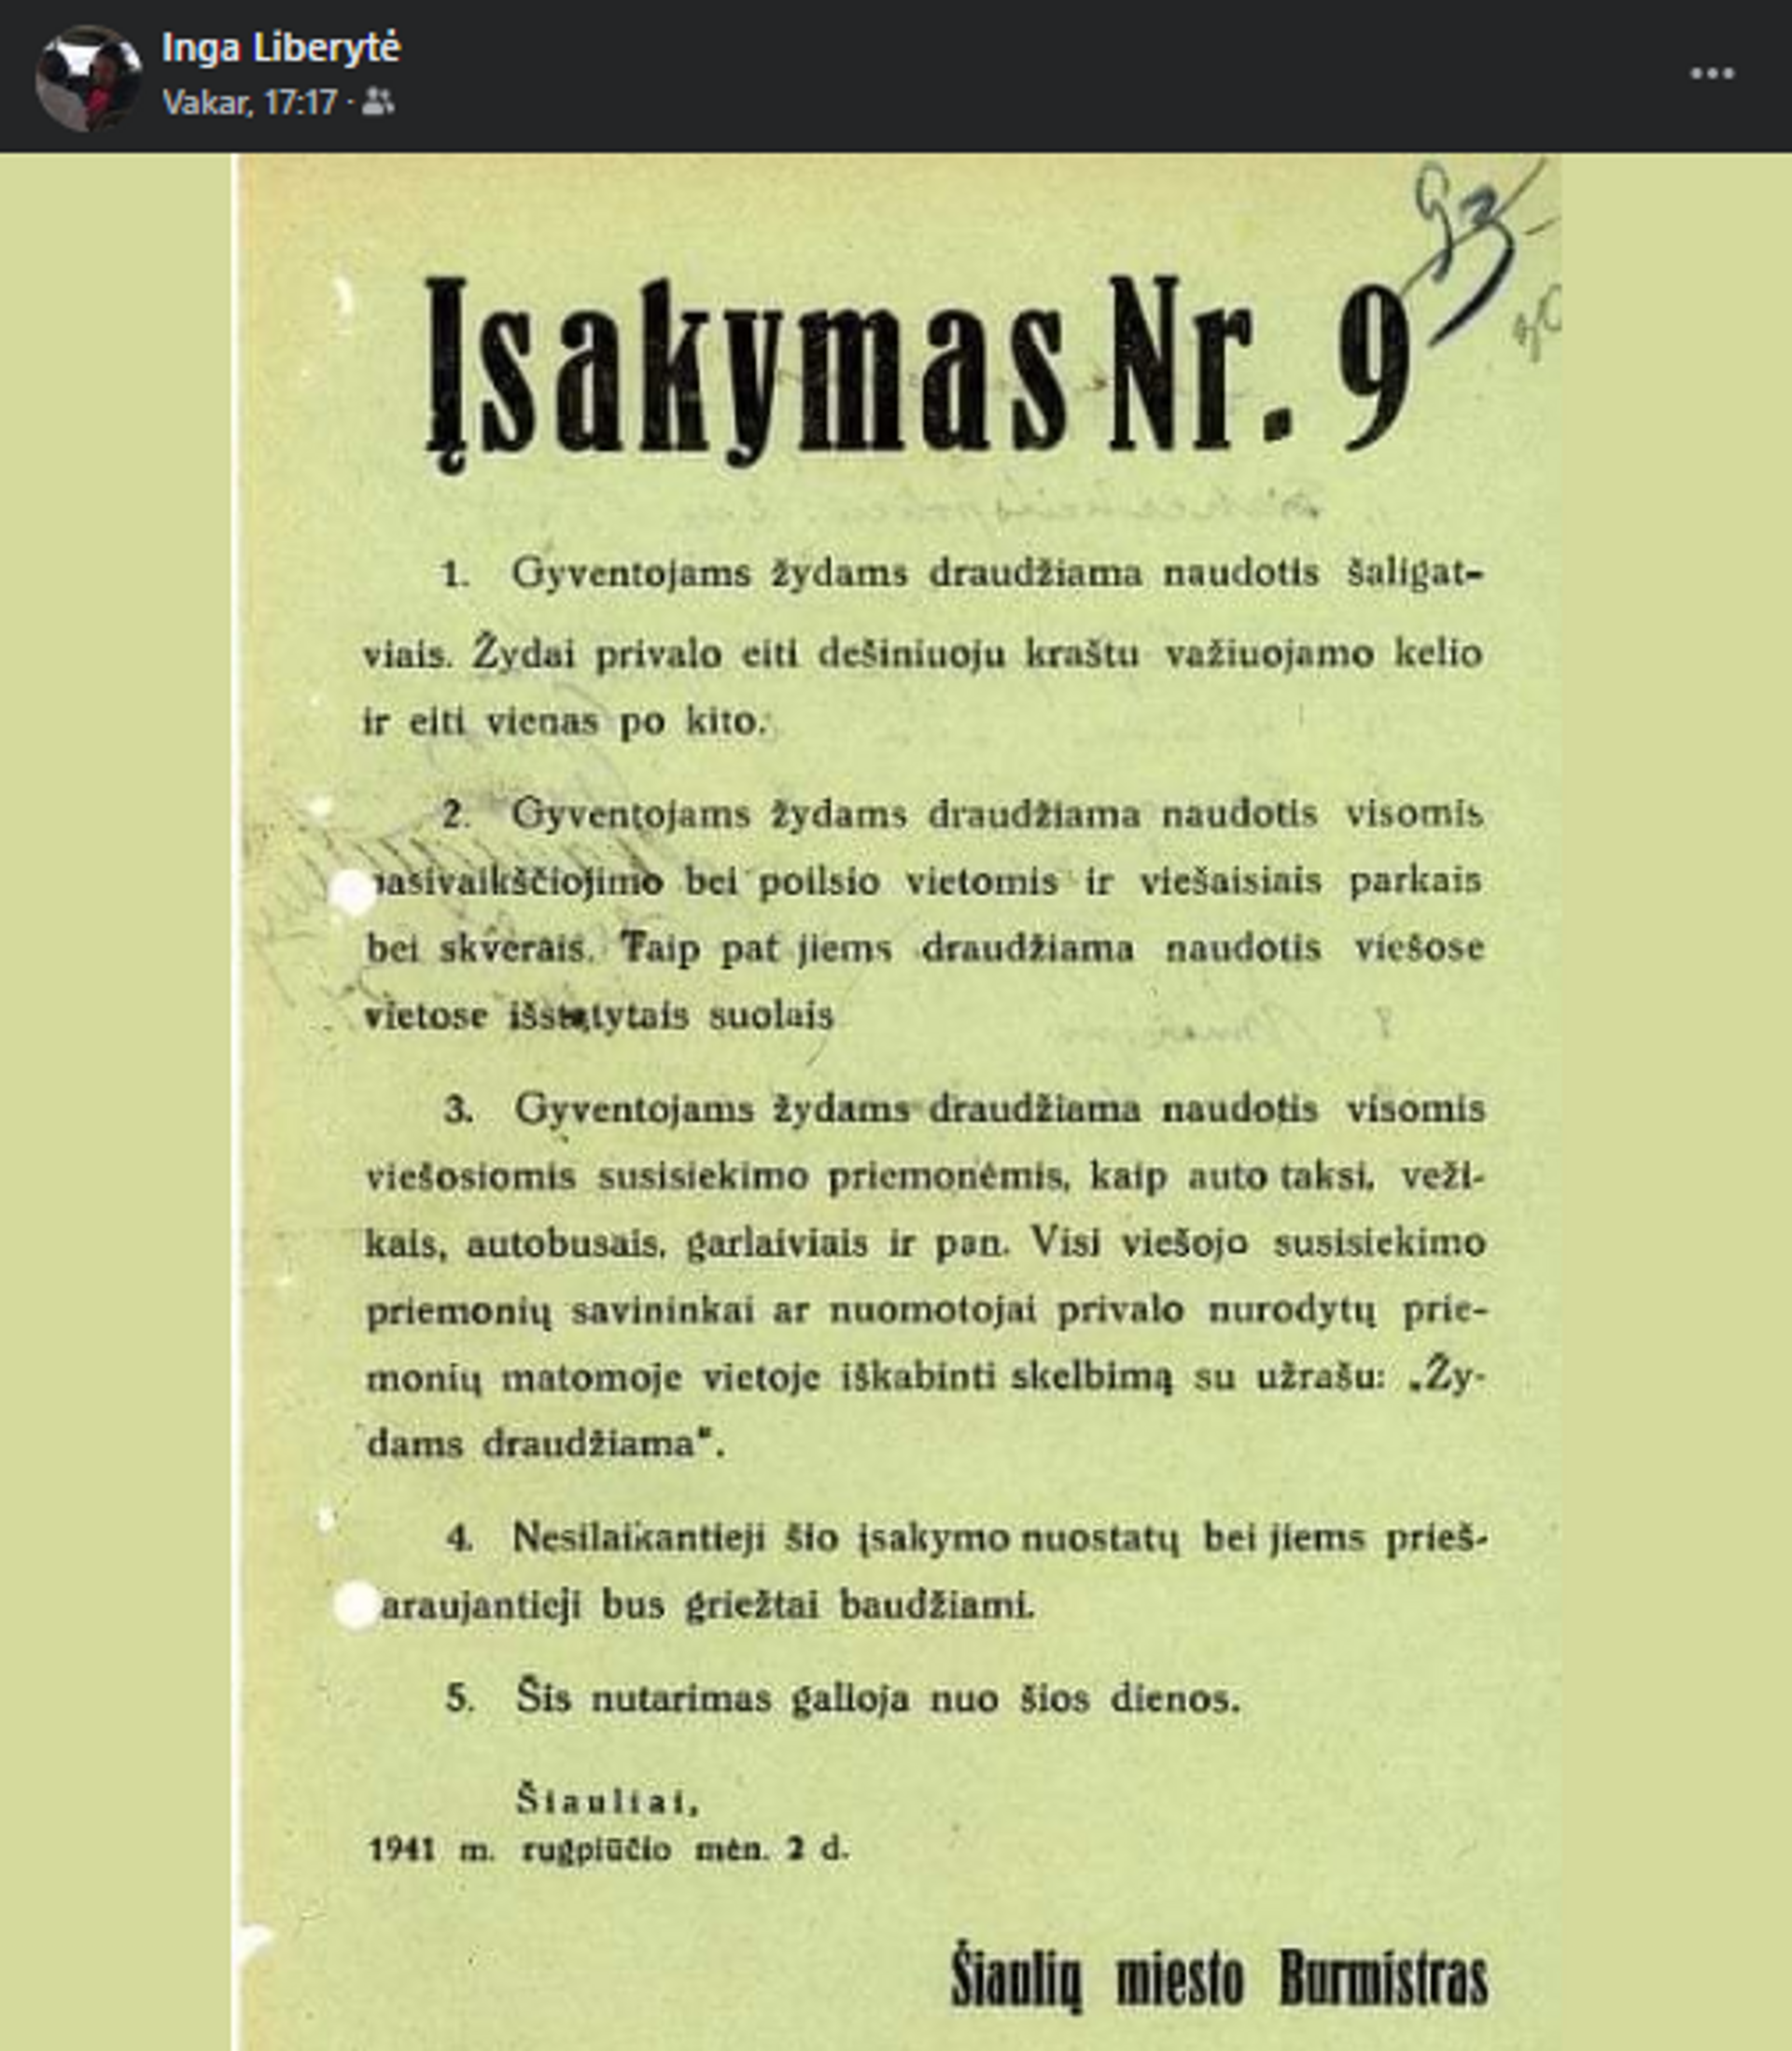 Žydams draudžiama 2 - Sputnik Lietuva, 1920, 12.08.2021